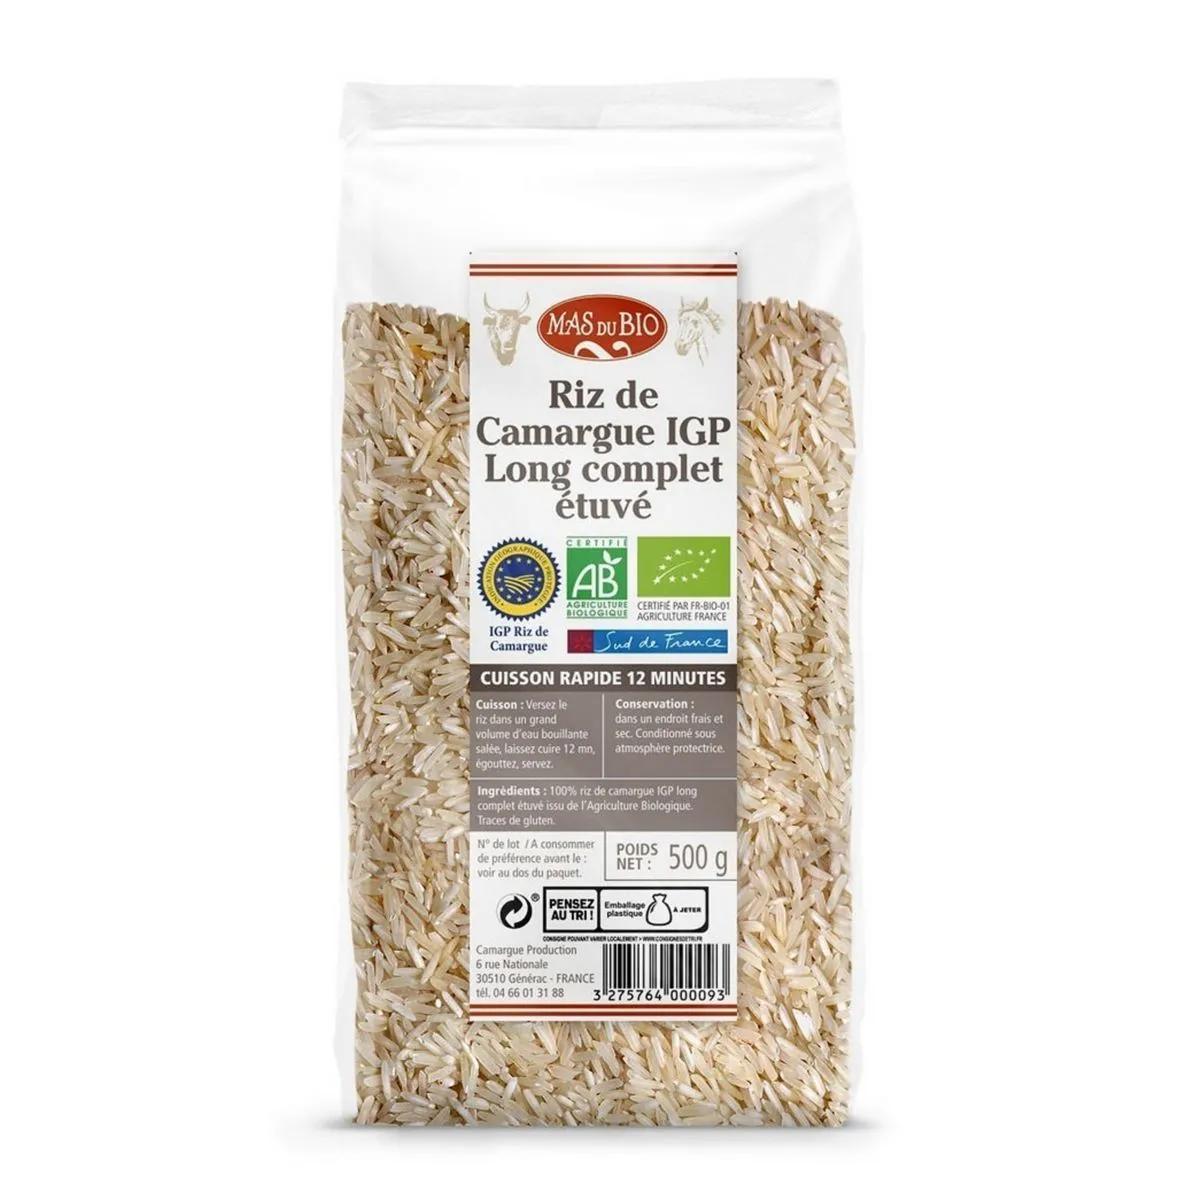 riz de camargue igp long complet étuvé bio mas du bio(1)